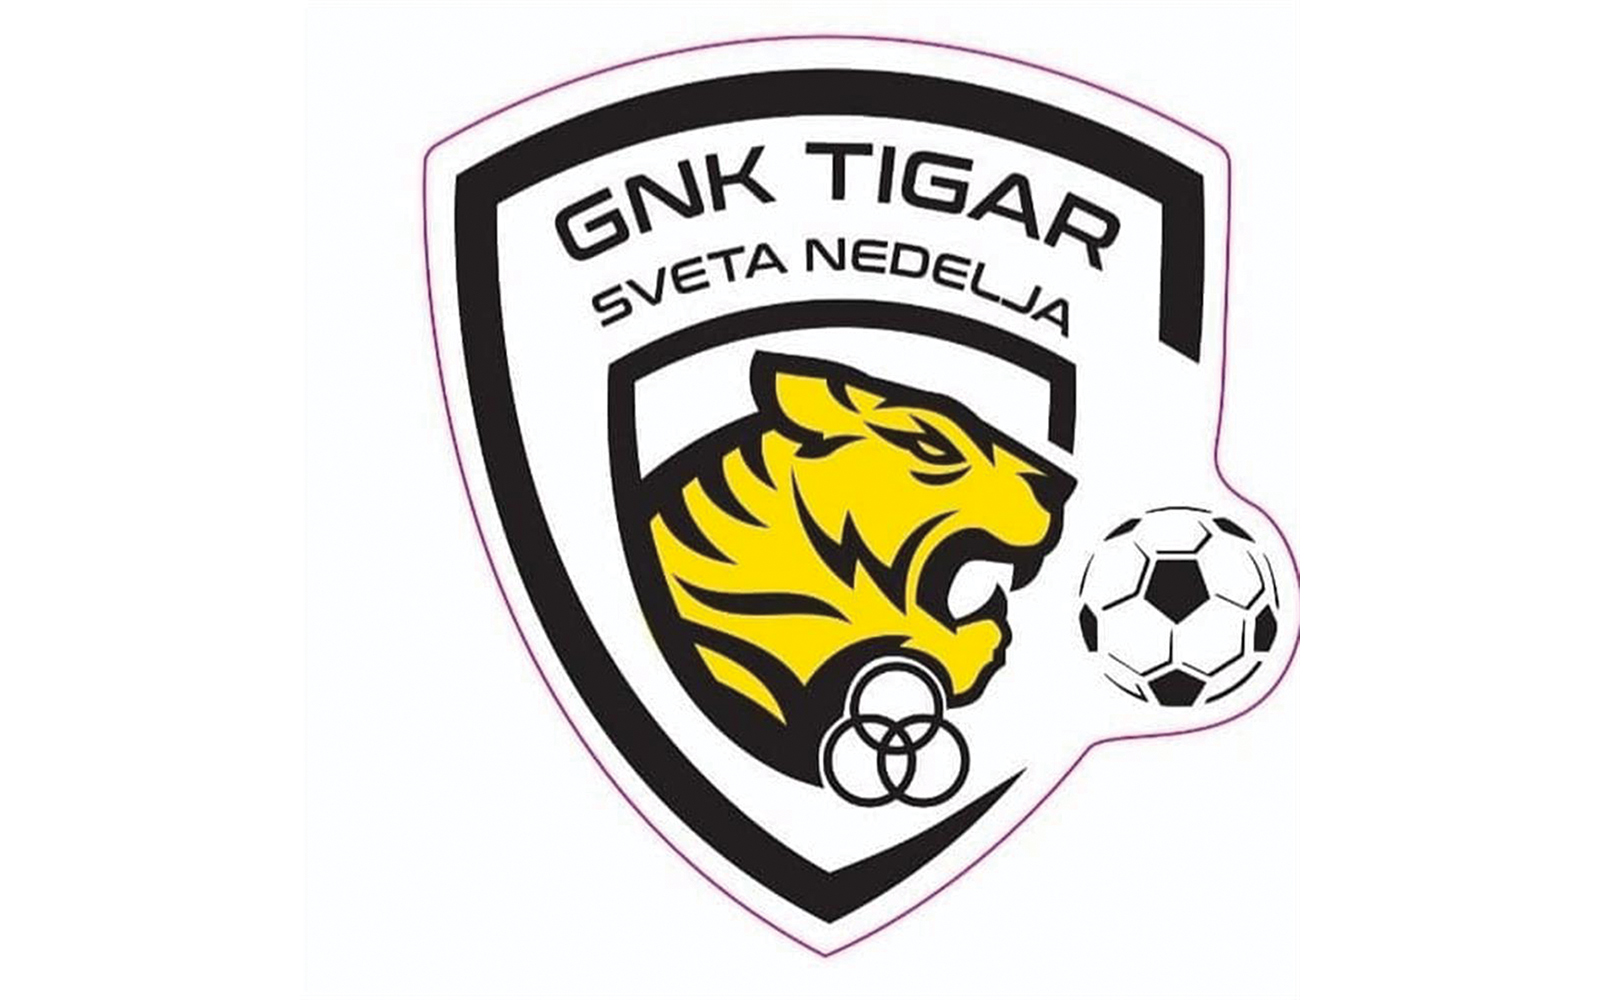 4. nogometna liga sredite Zagreb  B - 9. kolo
Topusko  Tigar Sveta Nedjelja 1:4 (0:2)